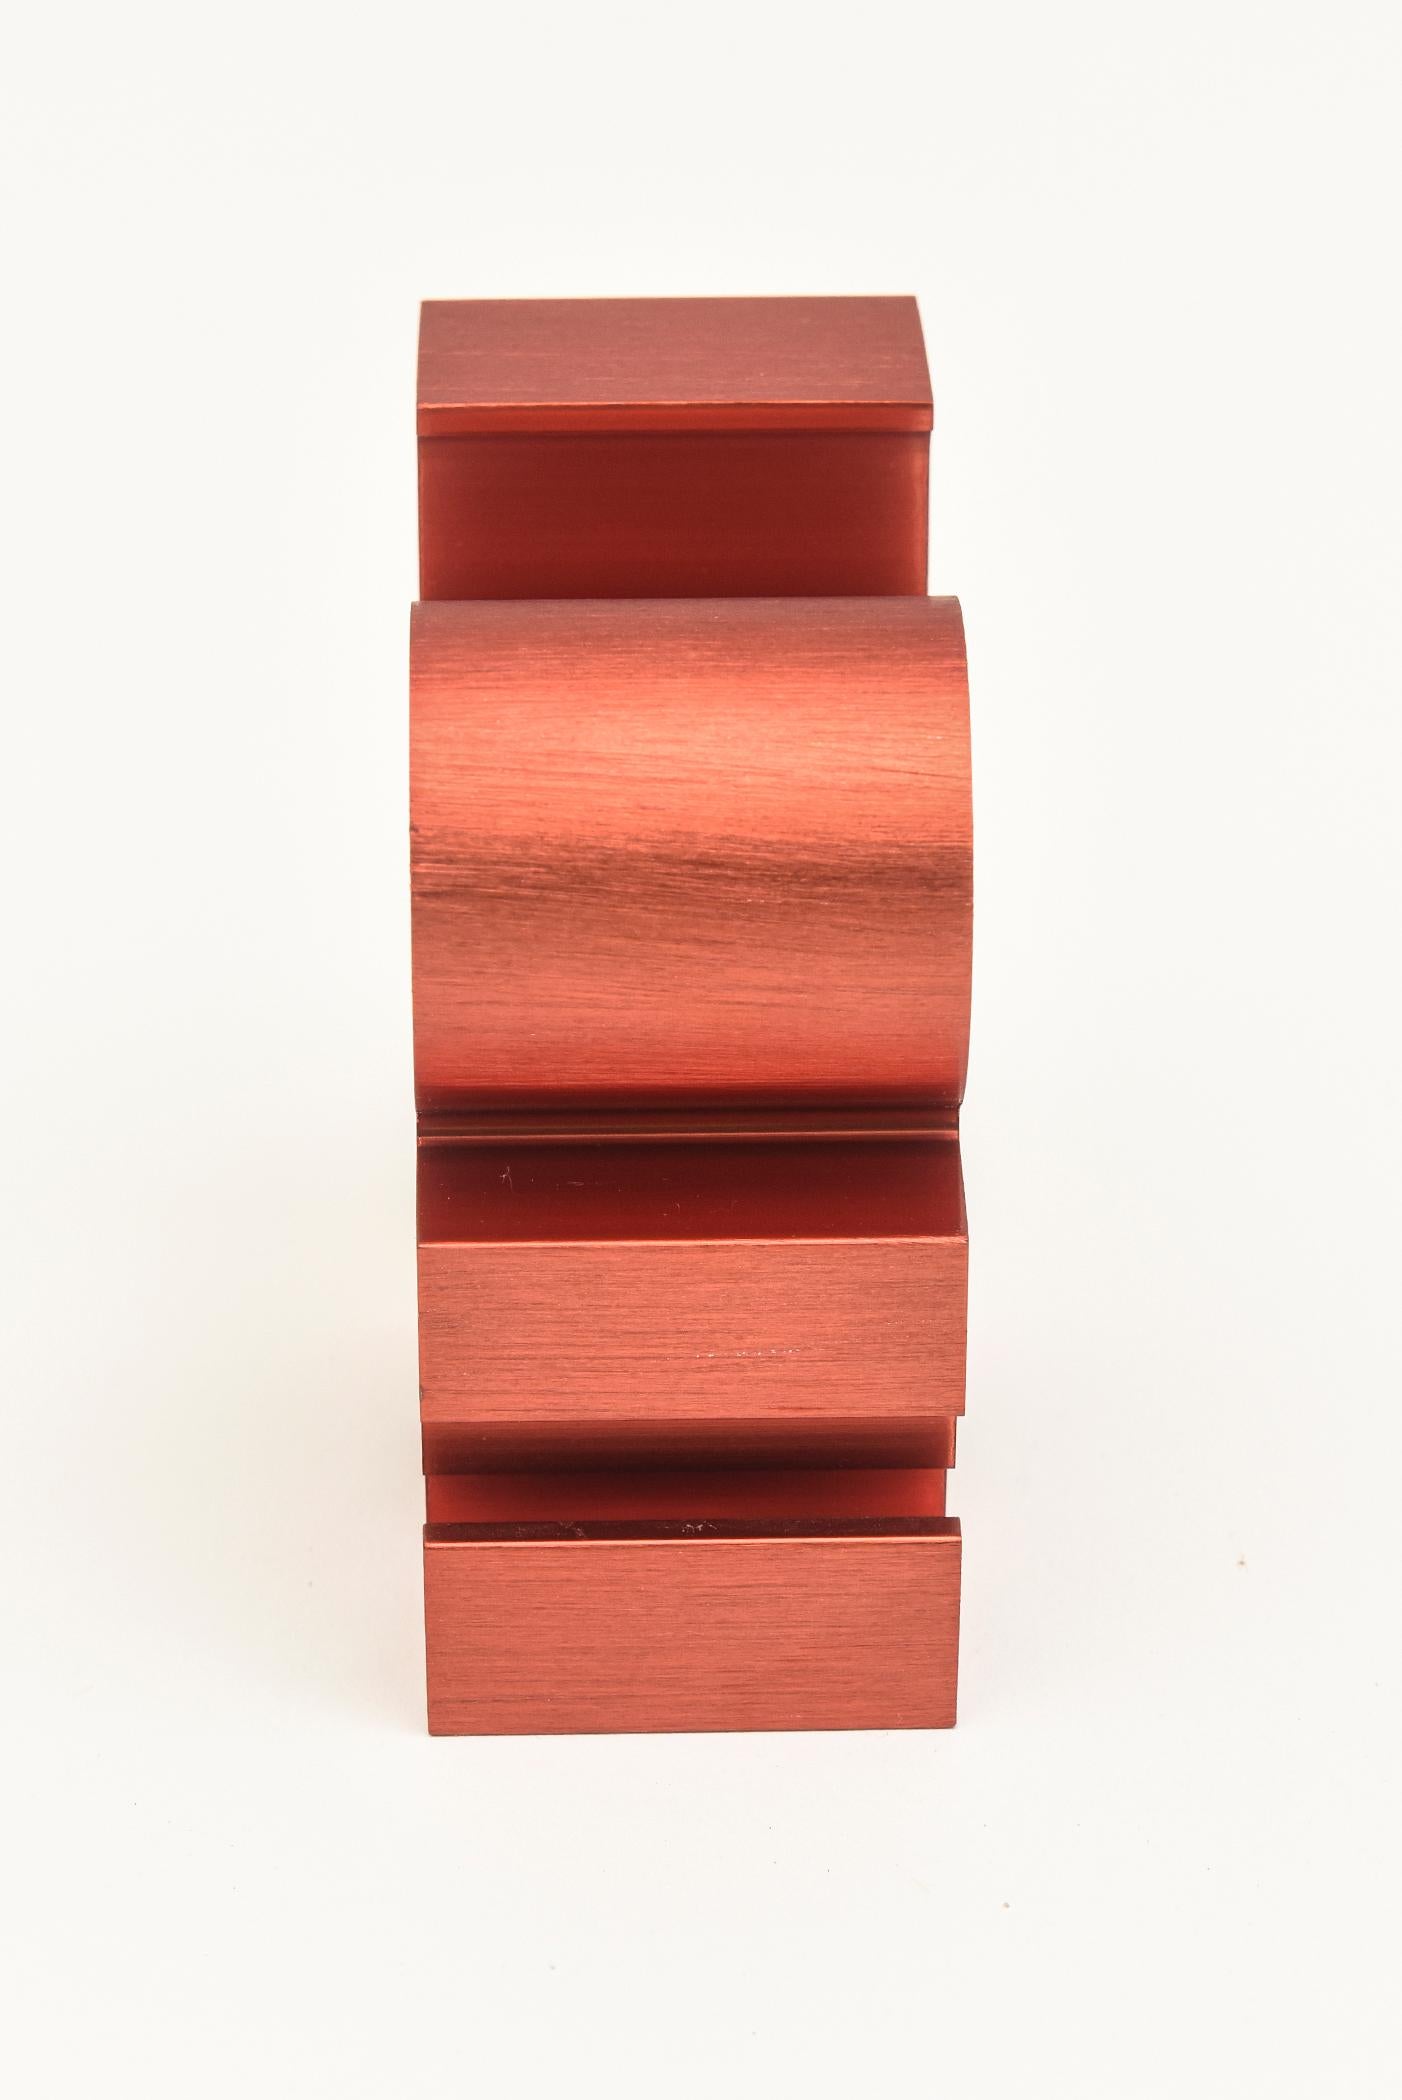 Fin du 20e siècle Accessoire de bureau de Robert Indiana en aluminium brossé rouge Love Paperweight sculpture en vente